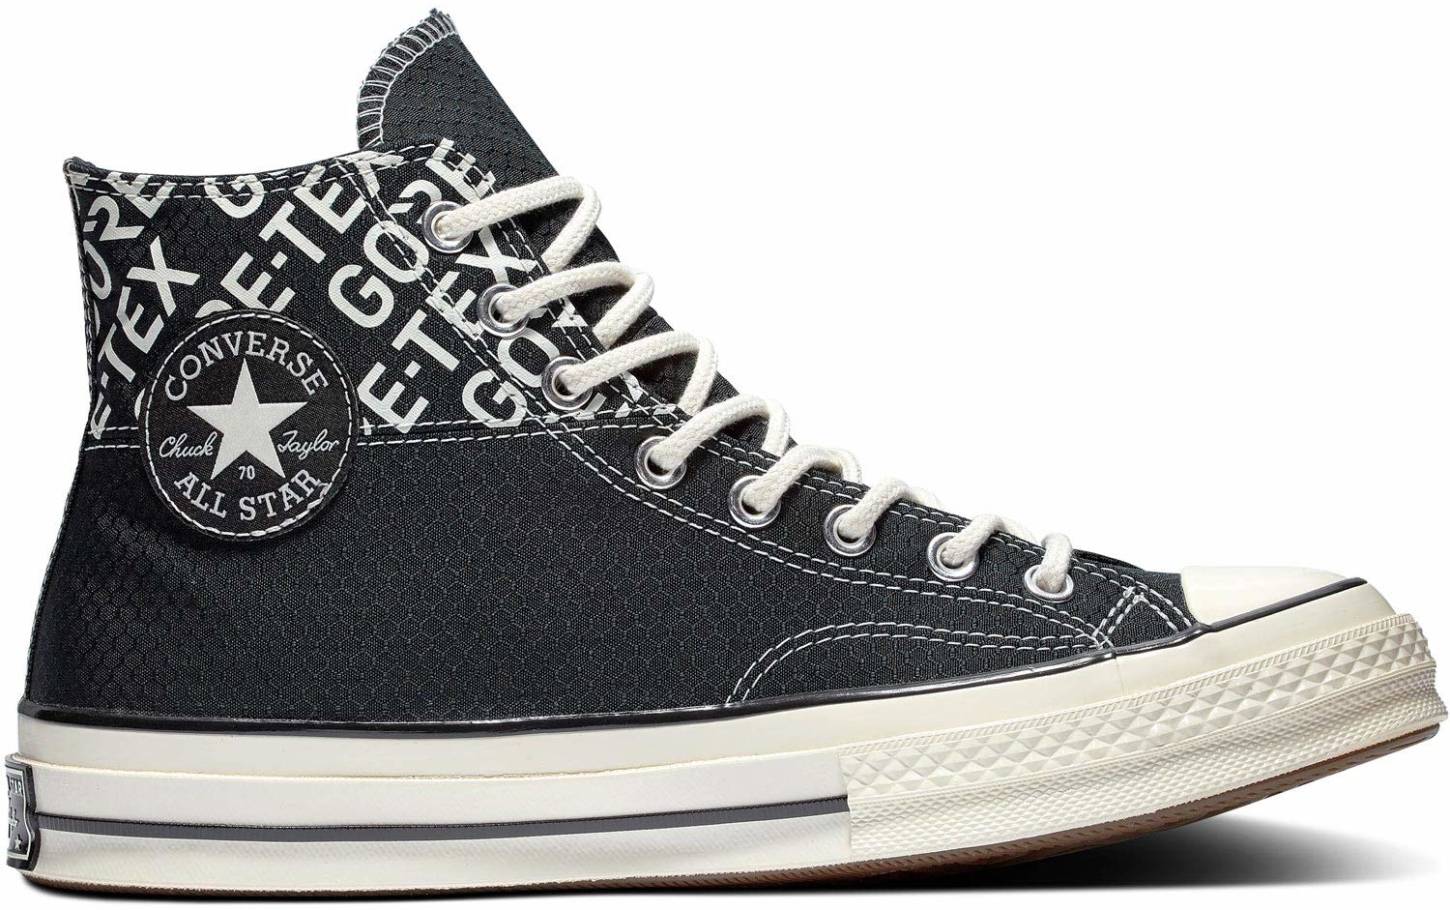 Converse Chuck 70 Gore-Tex High Top sneakers in black (only $75 ... نظارات برادا نسائي